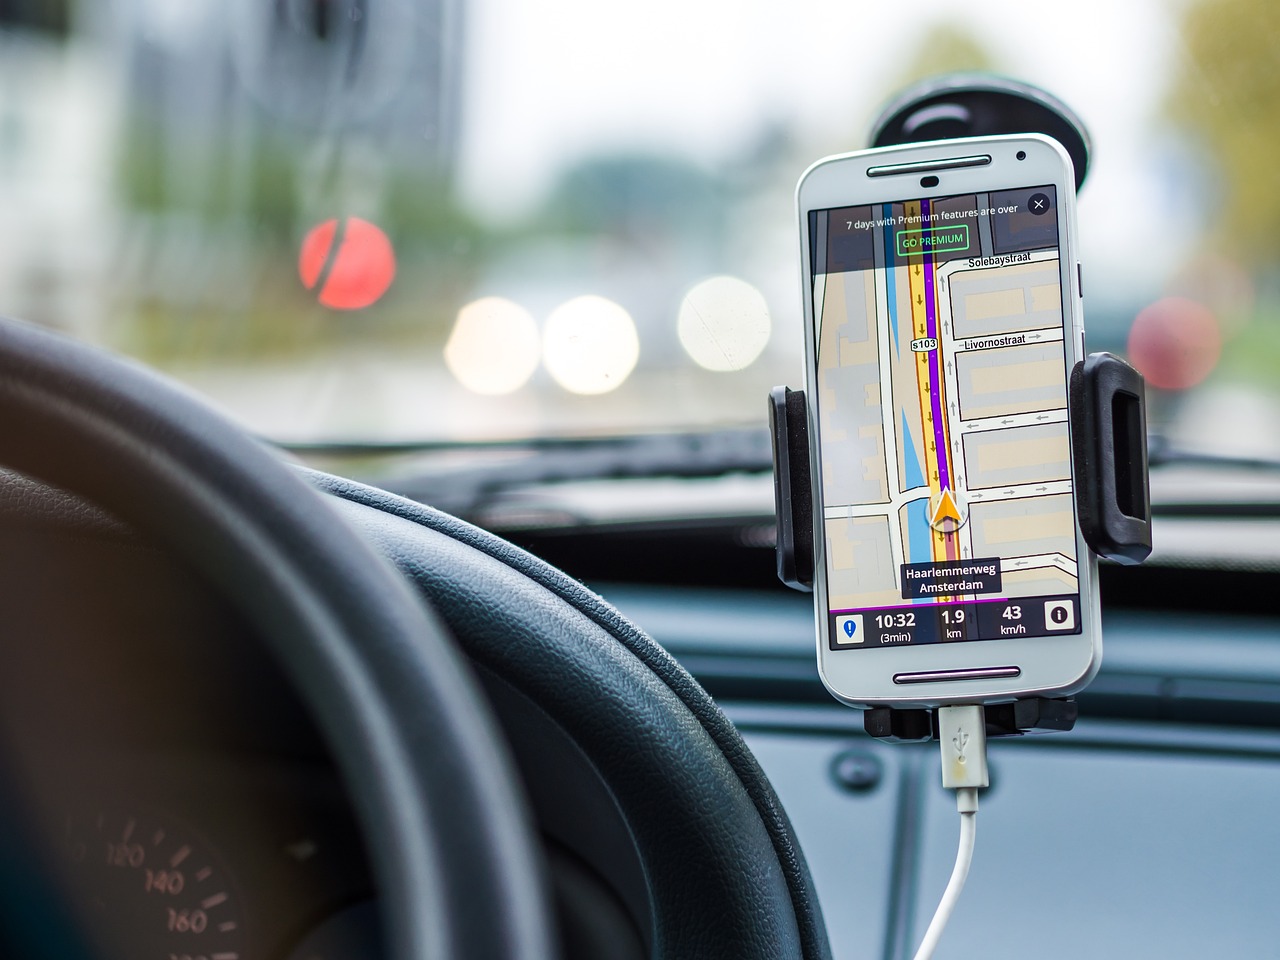 Używanie telefonu podczas jazdy — ile może wynieść mandat?